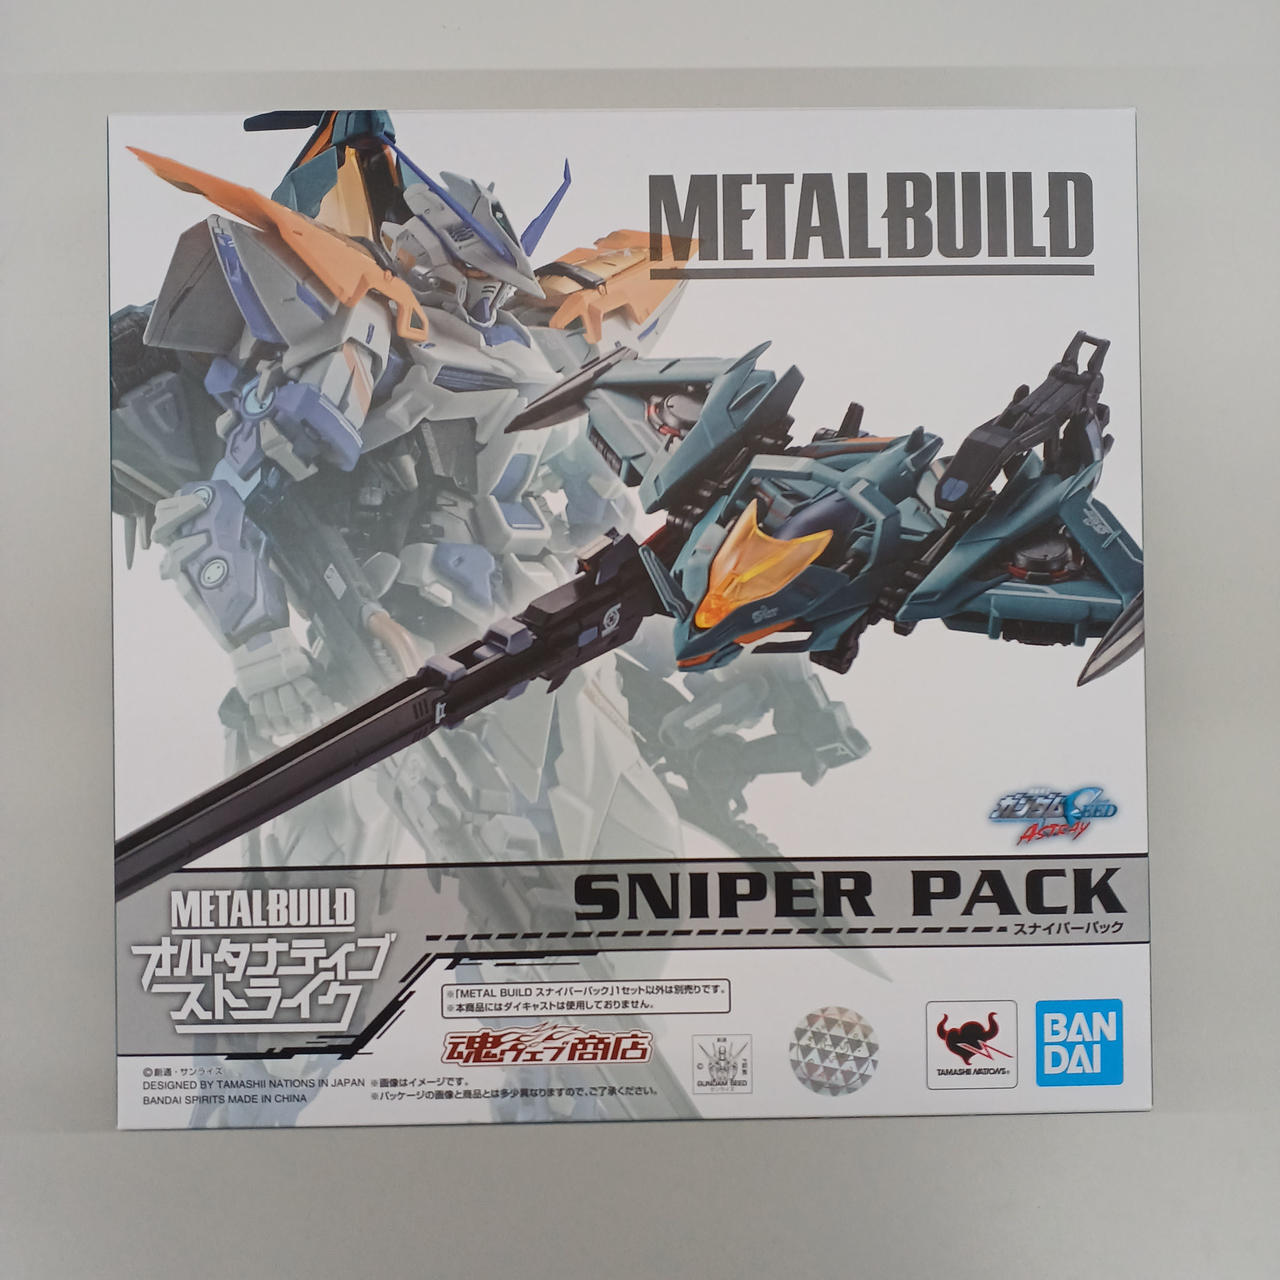 Bandai Sniper Pack Metal Build Alternative Strike